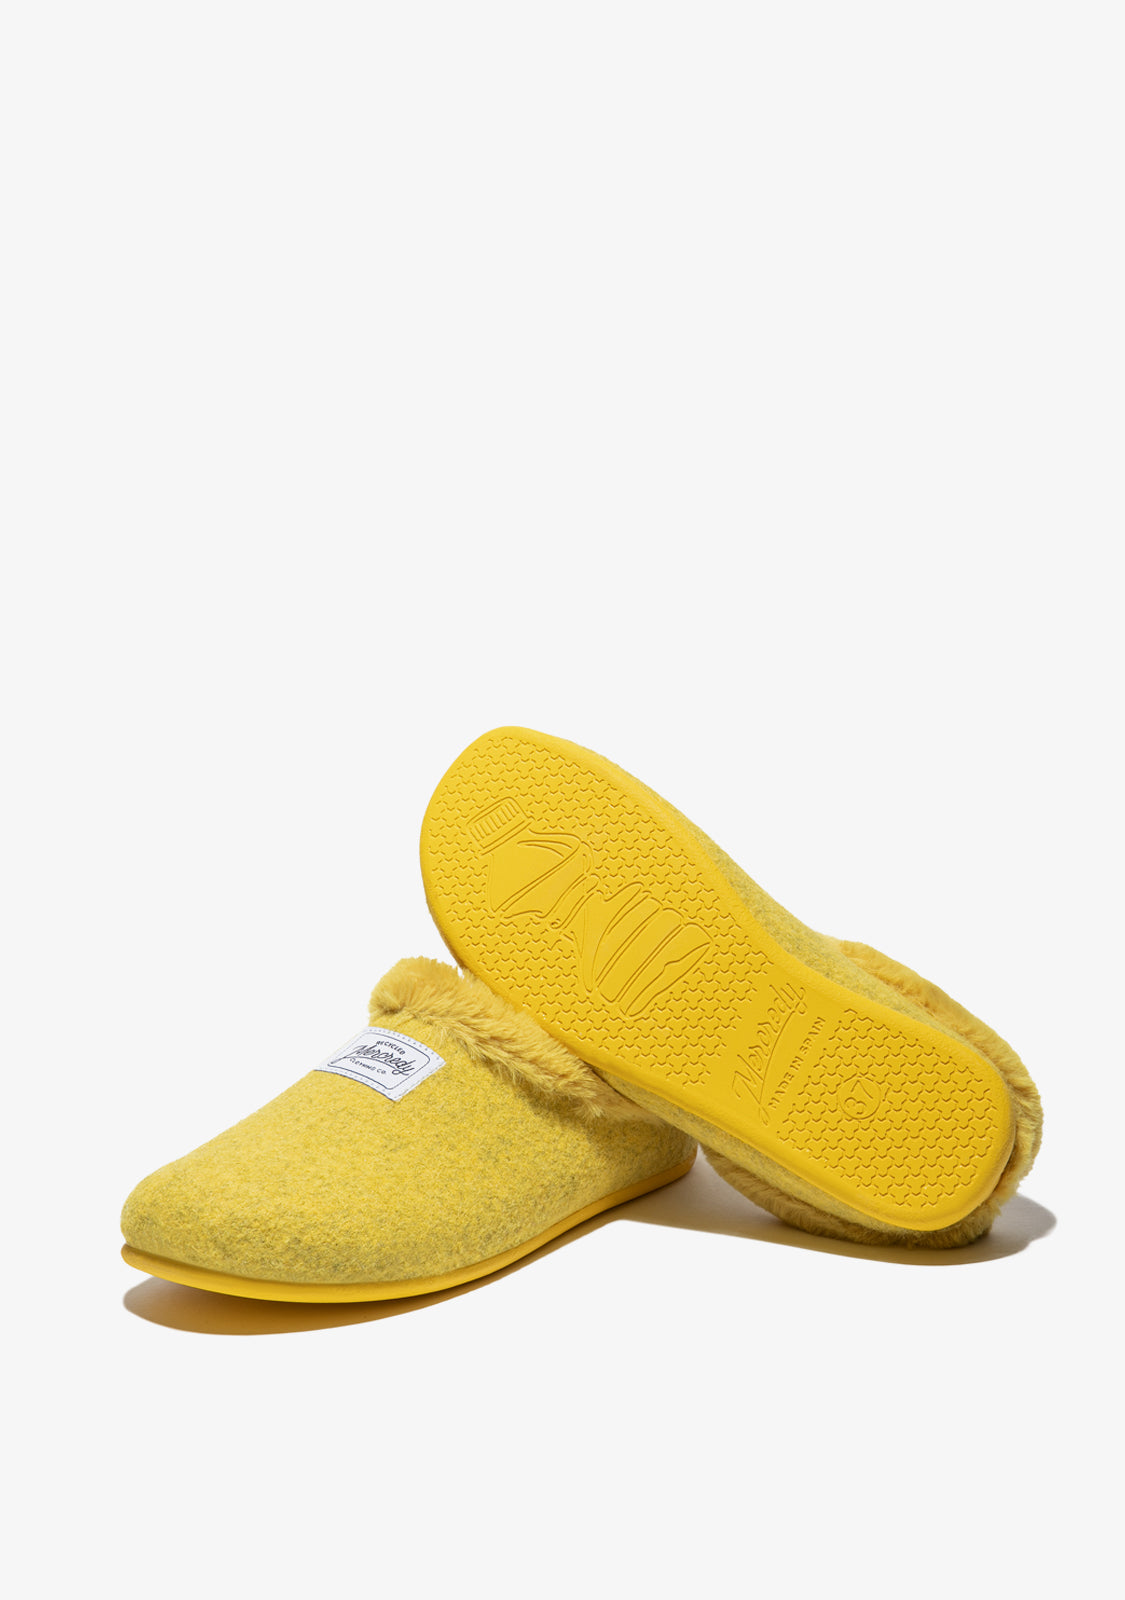 Mercredy Slipper Yellow